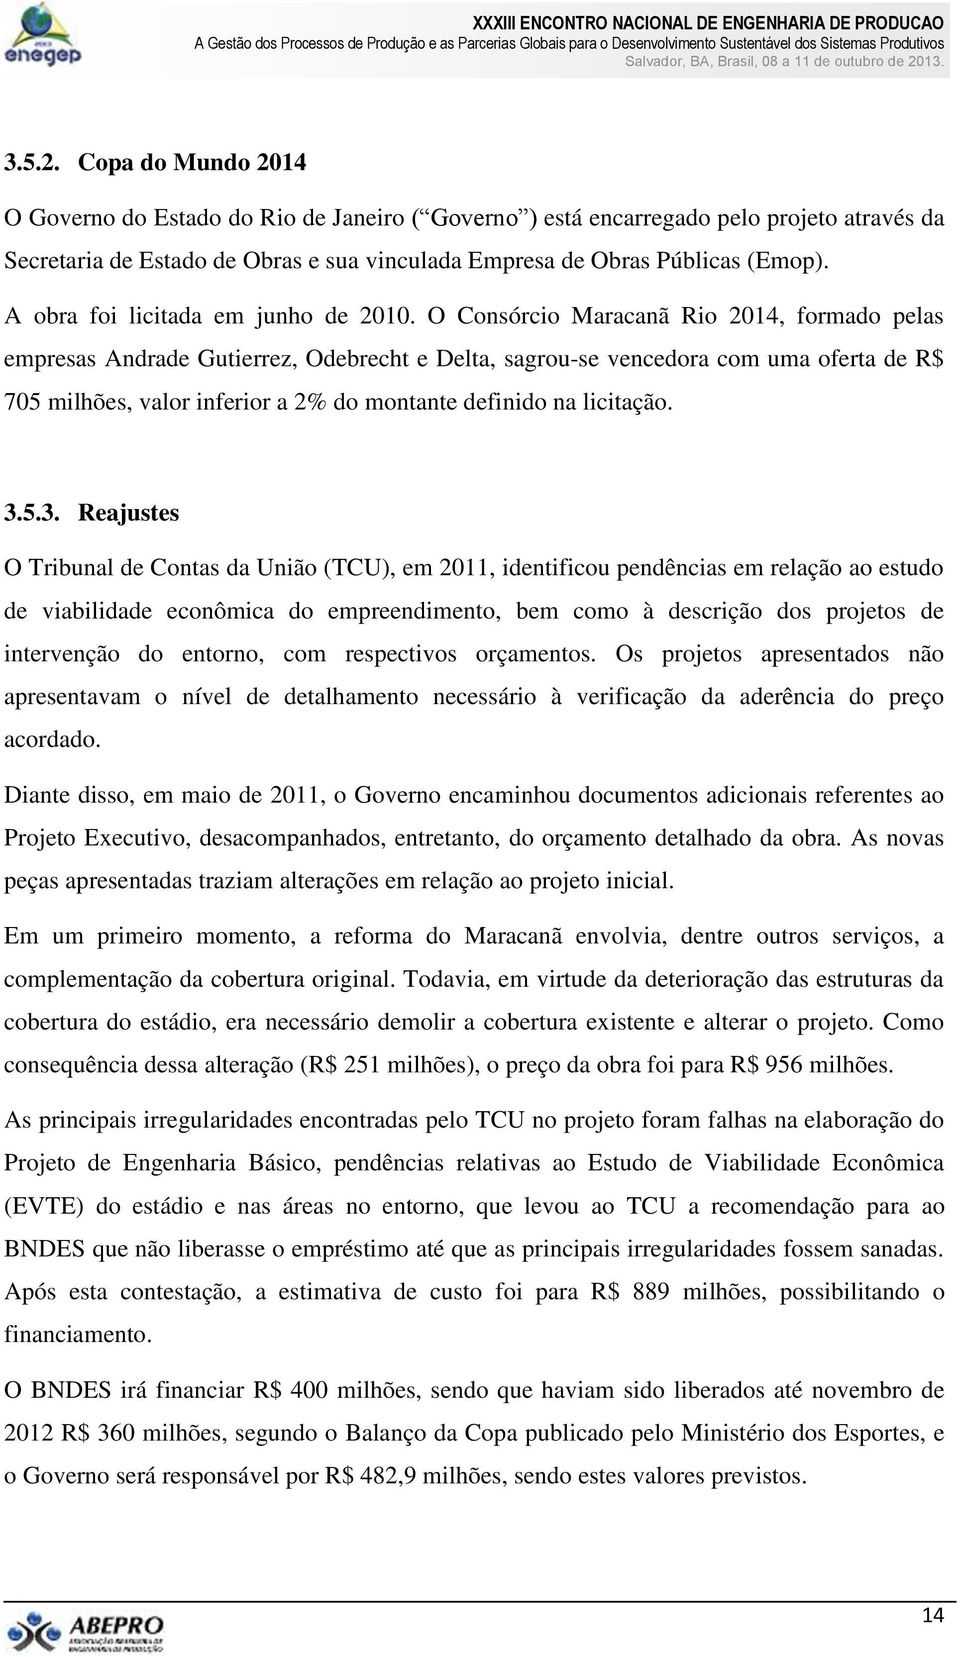 O Consórcio Maracanã Rio 2014, formado pelas empresas Andrade Gutierrez, Odebrecht e Delta, sagrou-se vencedora com uma oferta de R$ 705 milhões, valor inferior a 2% do montante definido na licitação.